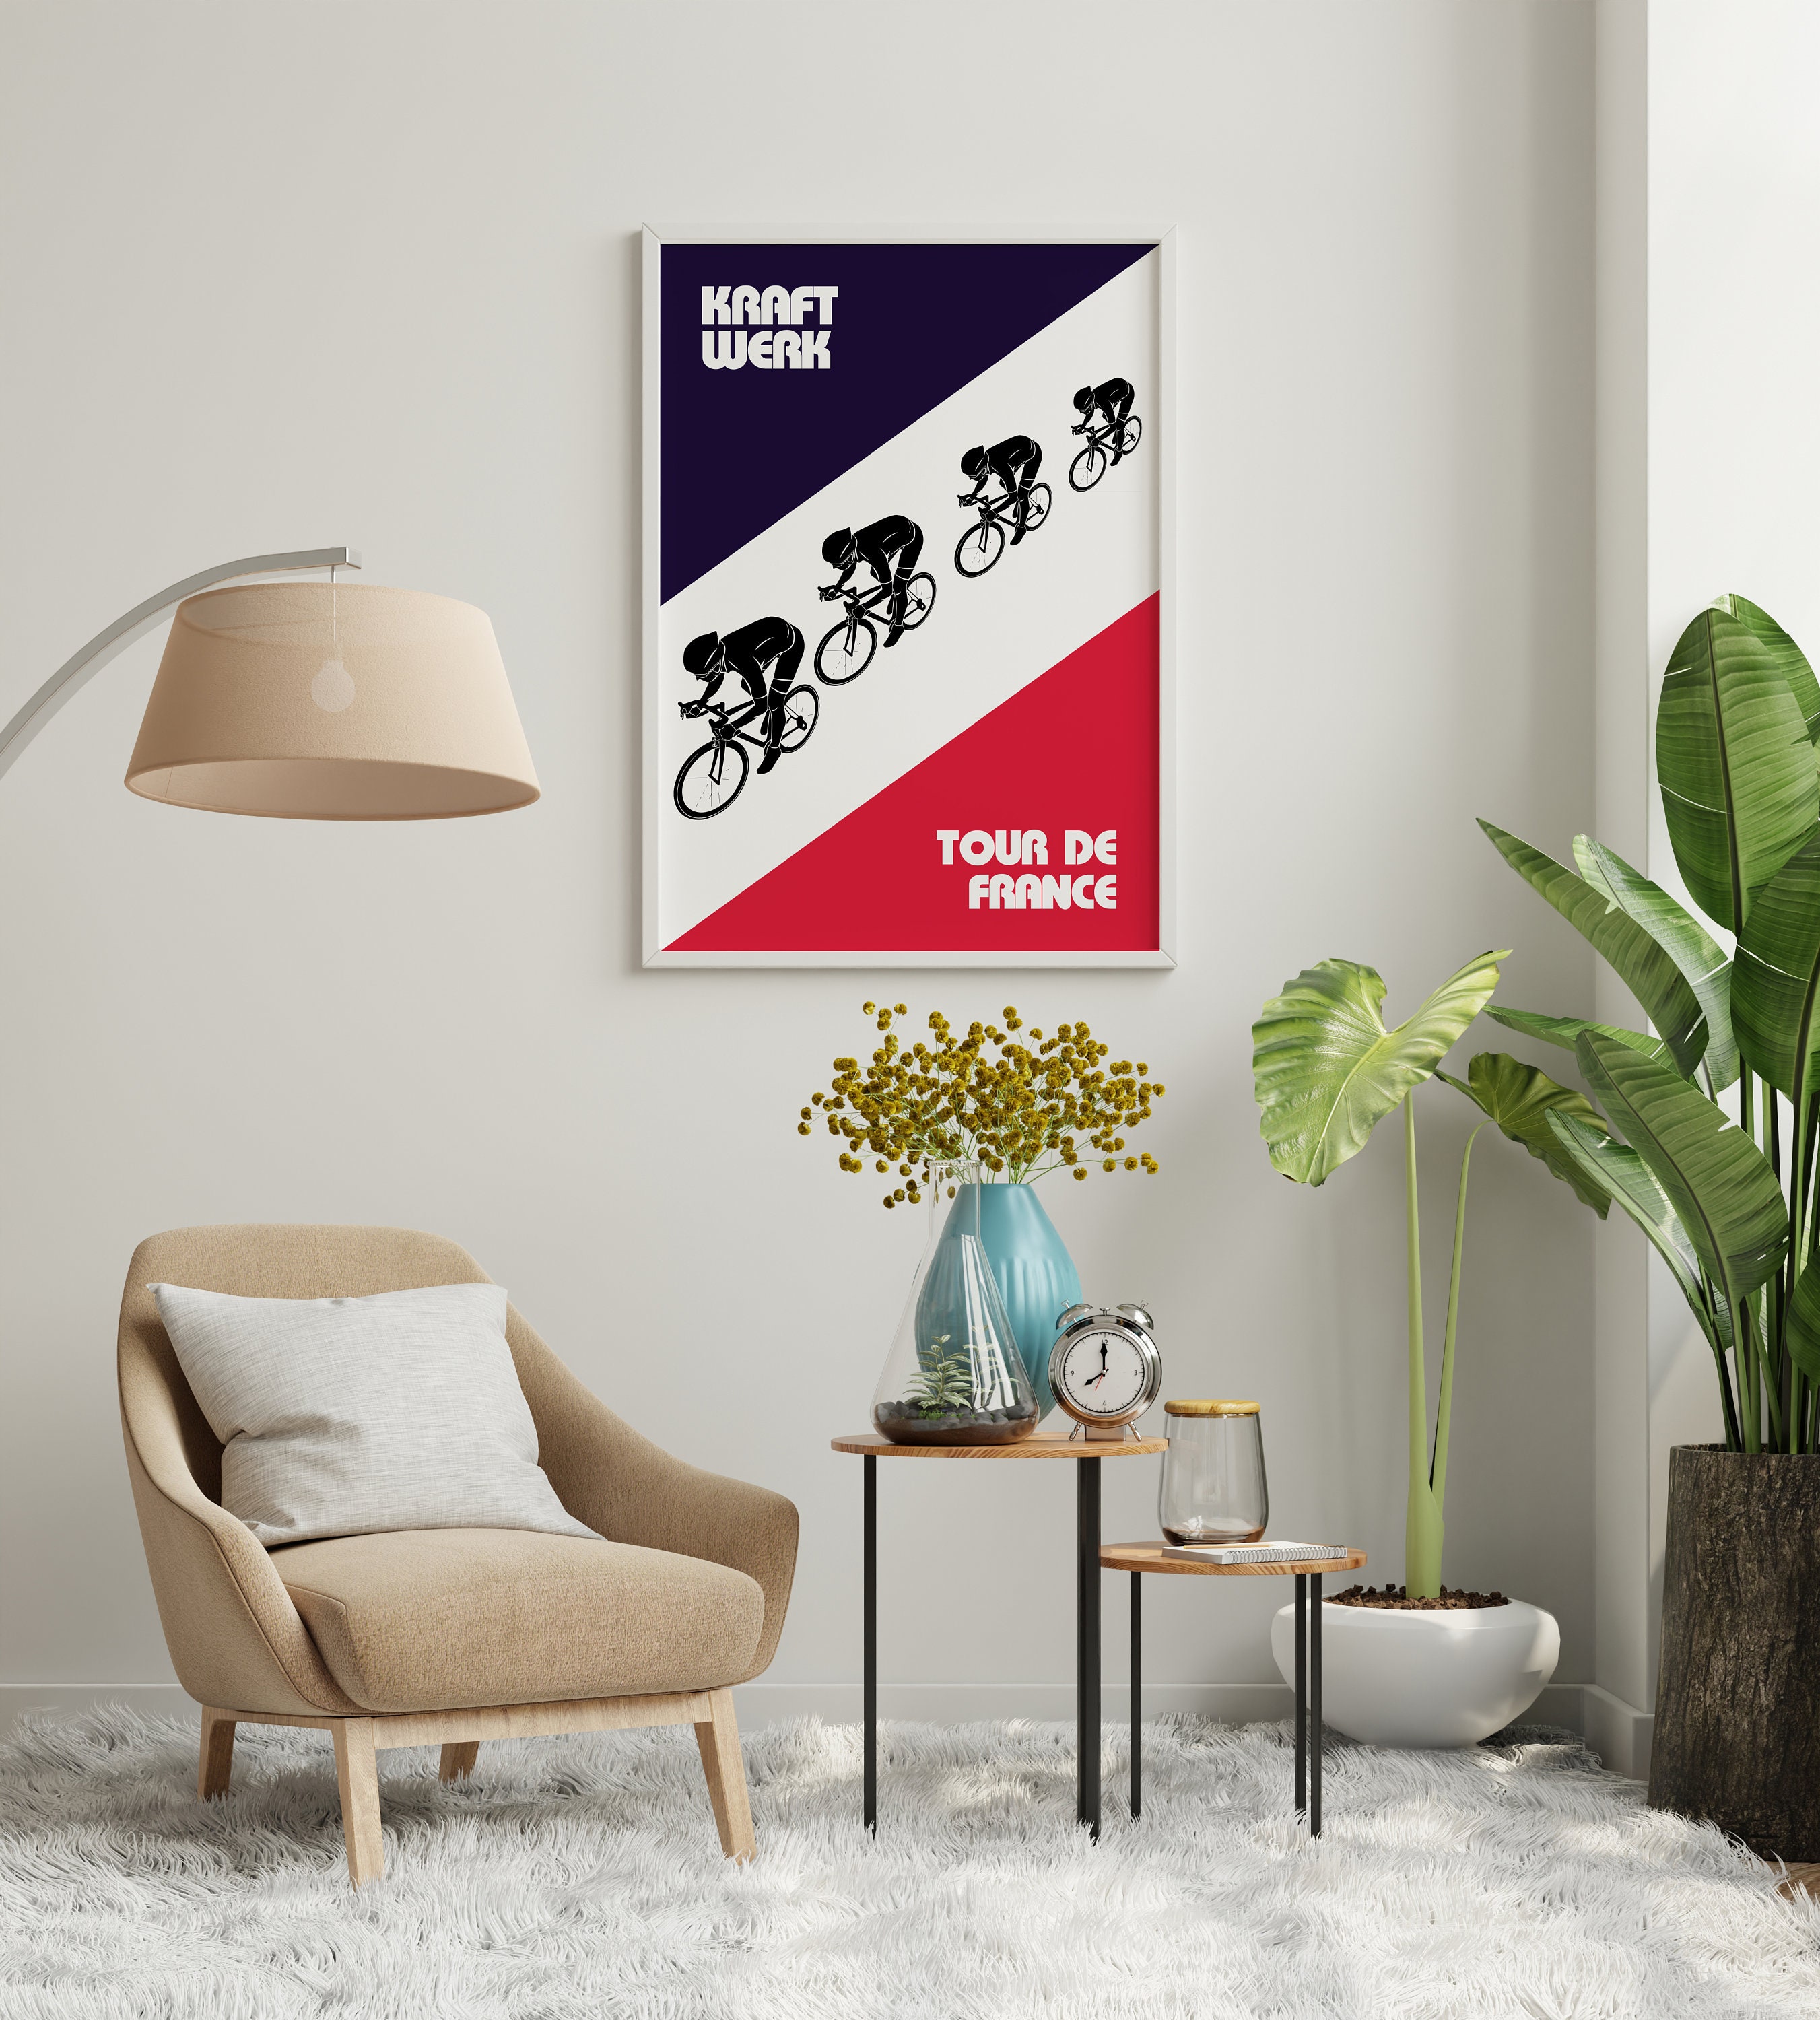 Discover Cartel de arte de ciclismo Kraftwerk Tour de France